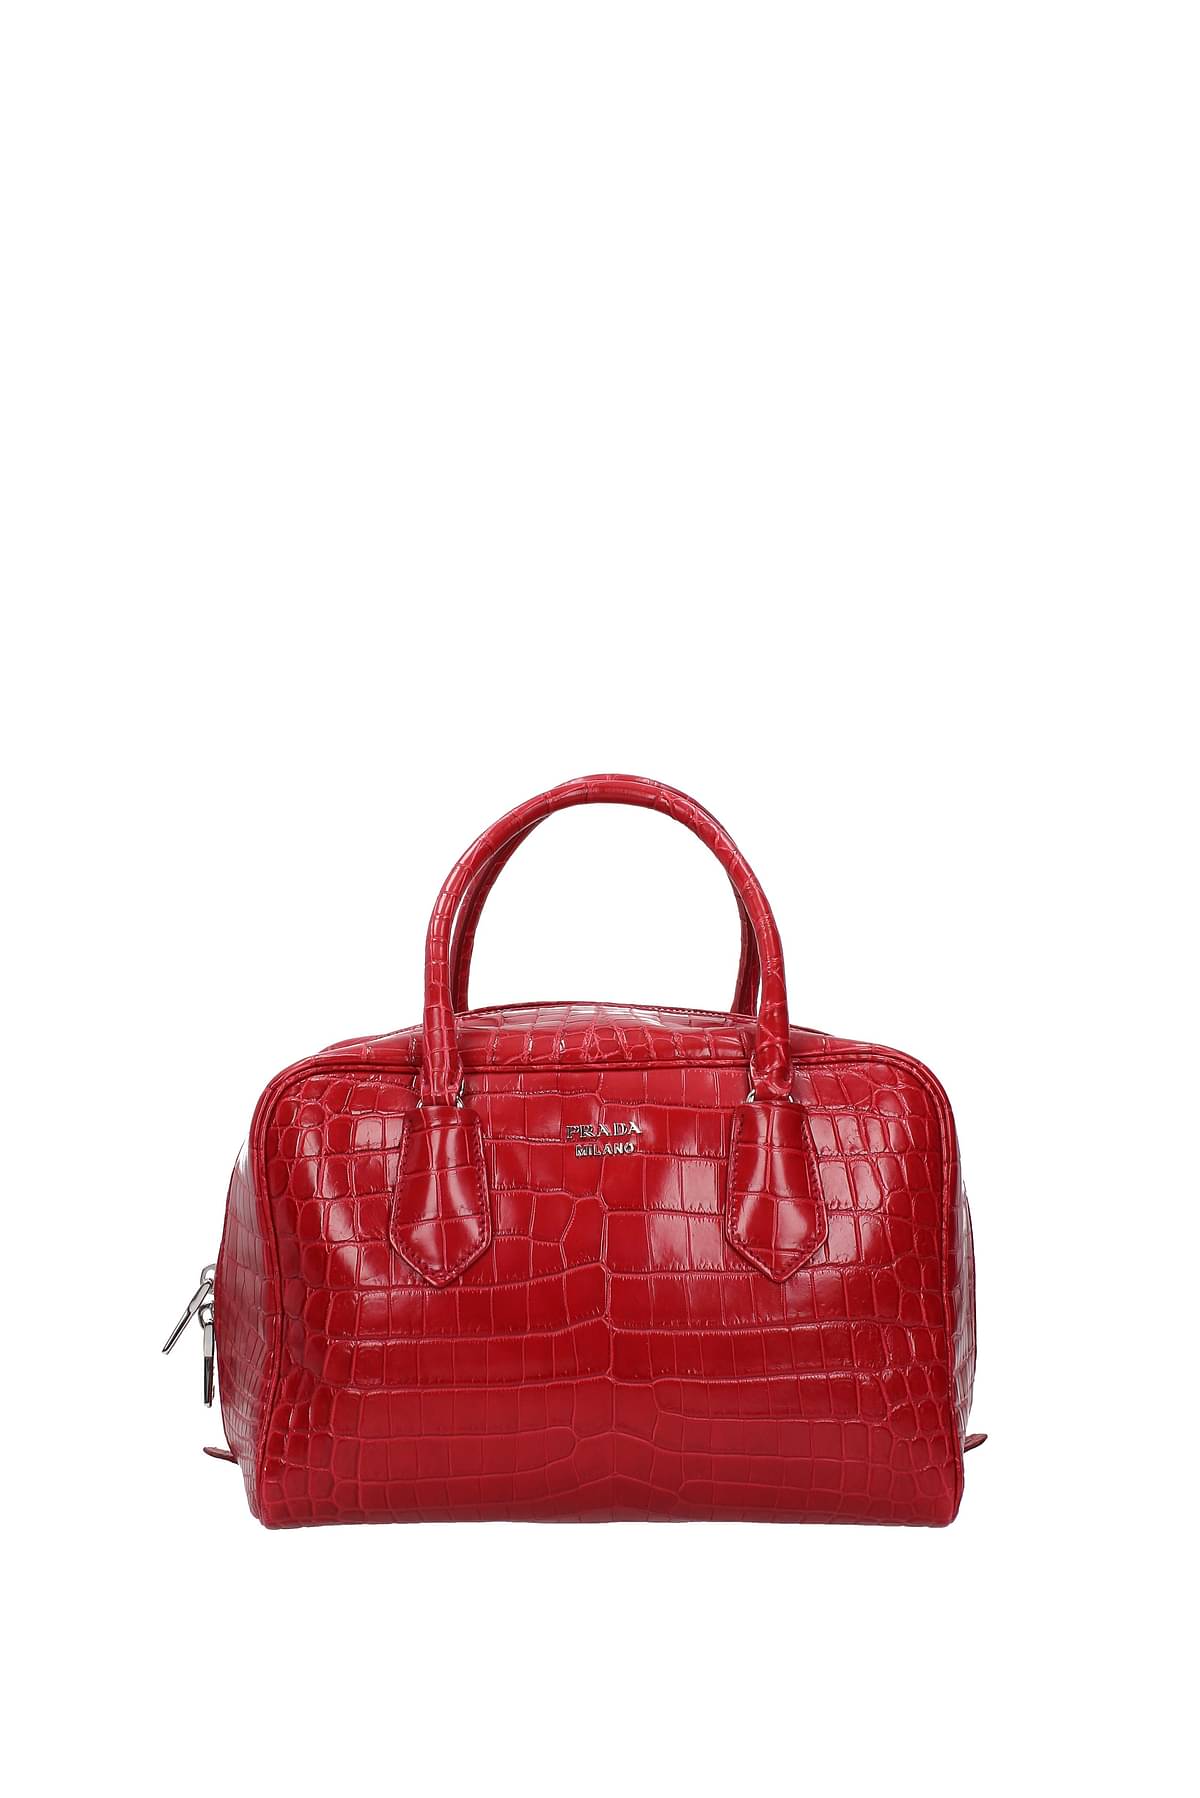 Prada, Bags, Prada Milano Dal 913 Red Crocodile Shoulder Bag